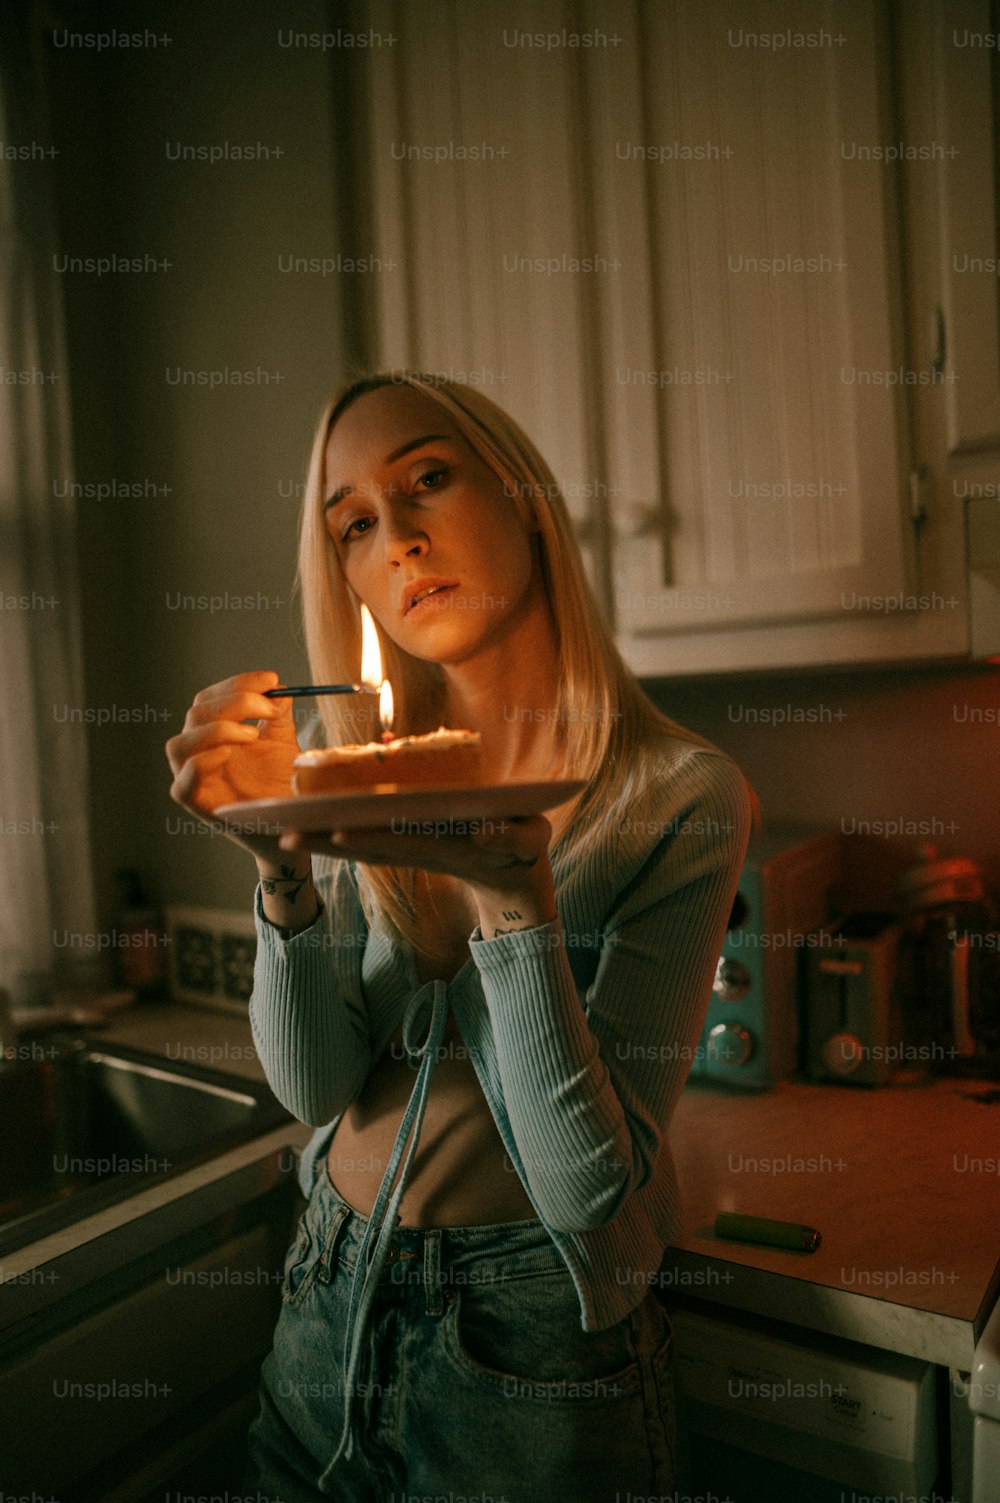 uma mulher segurando um prato com um bolo sobre ele